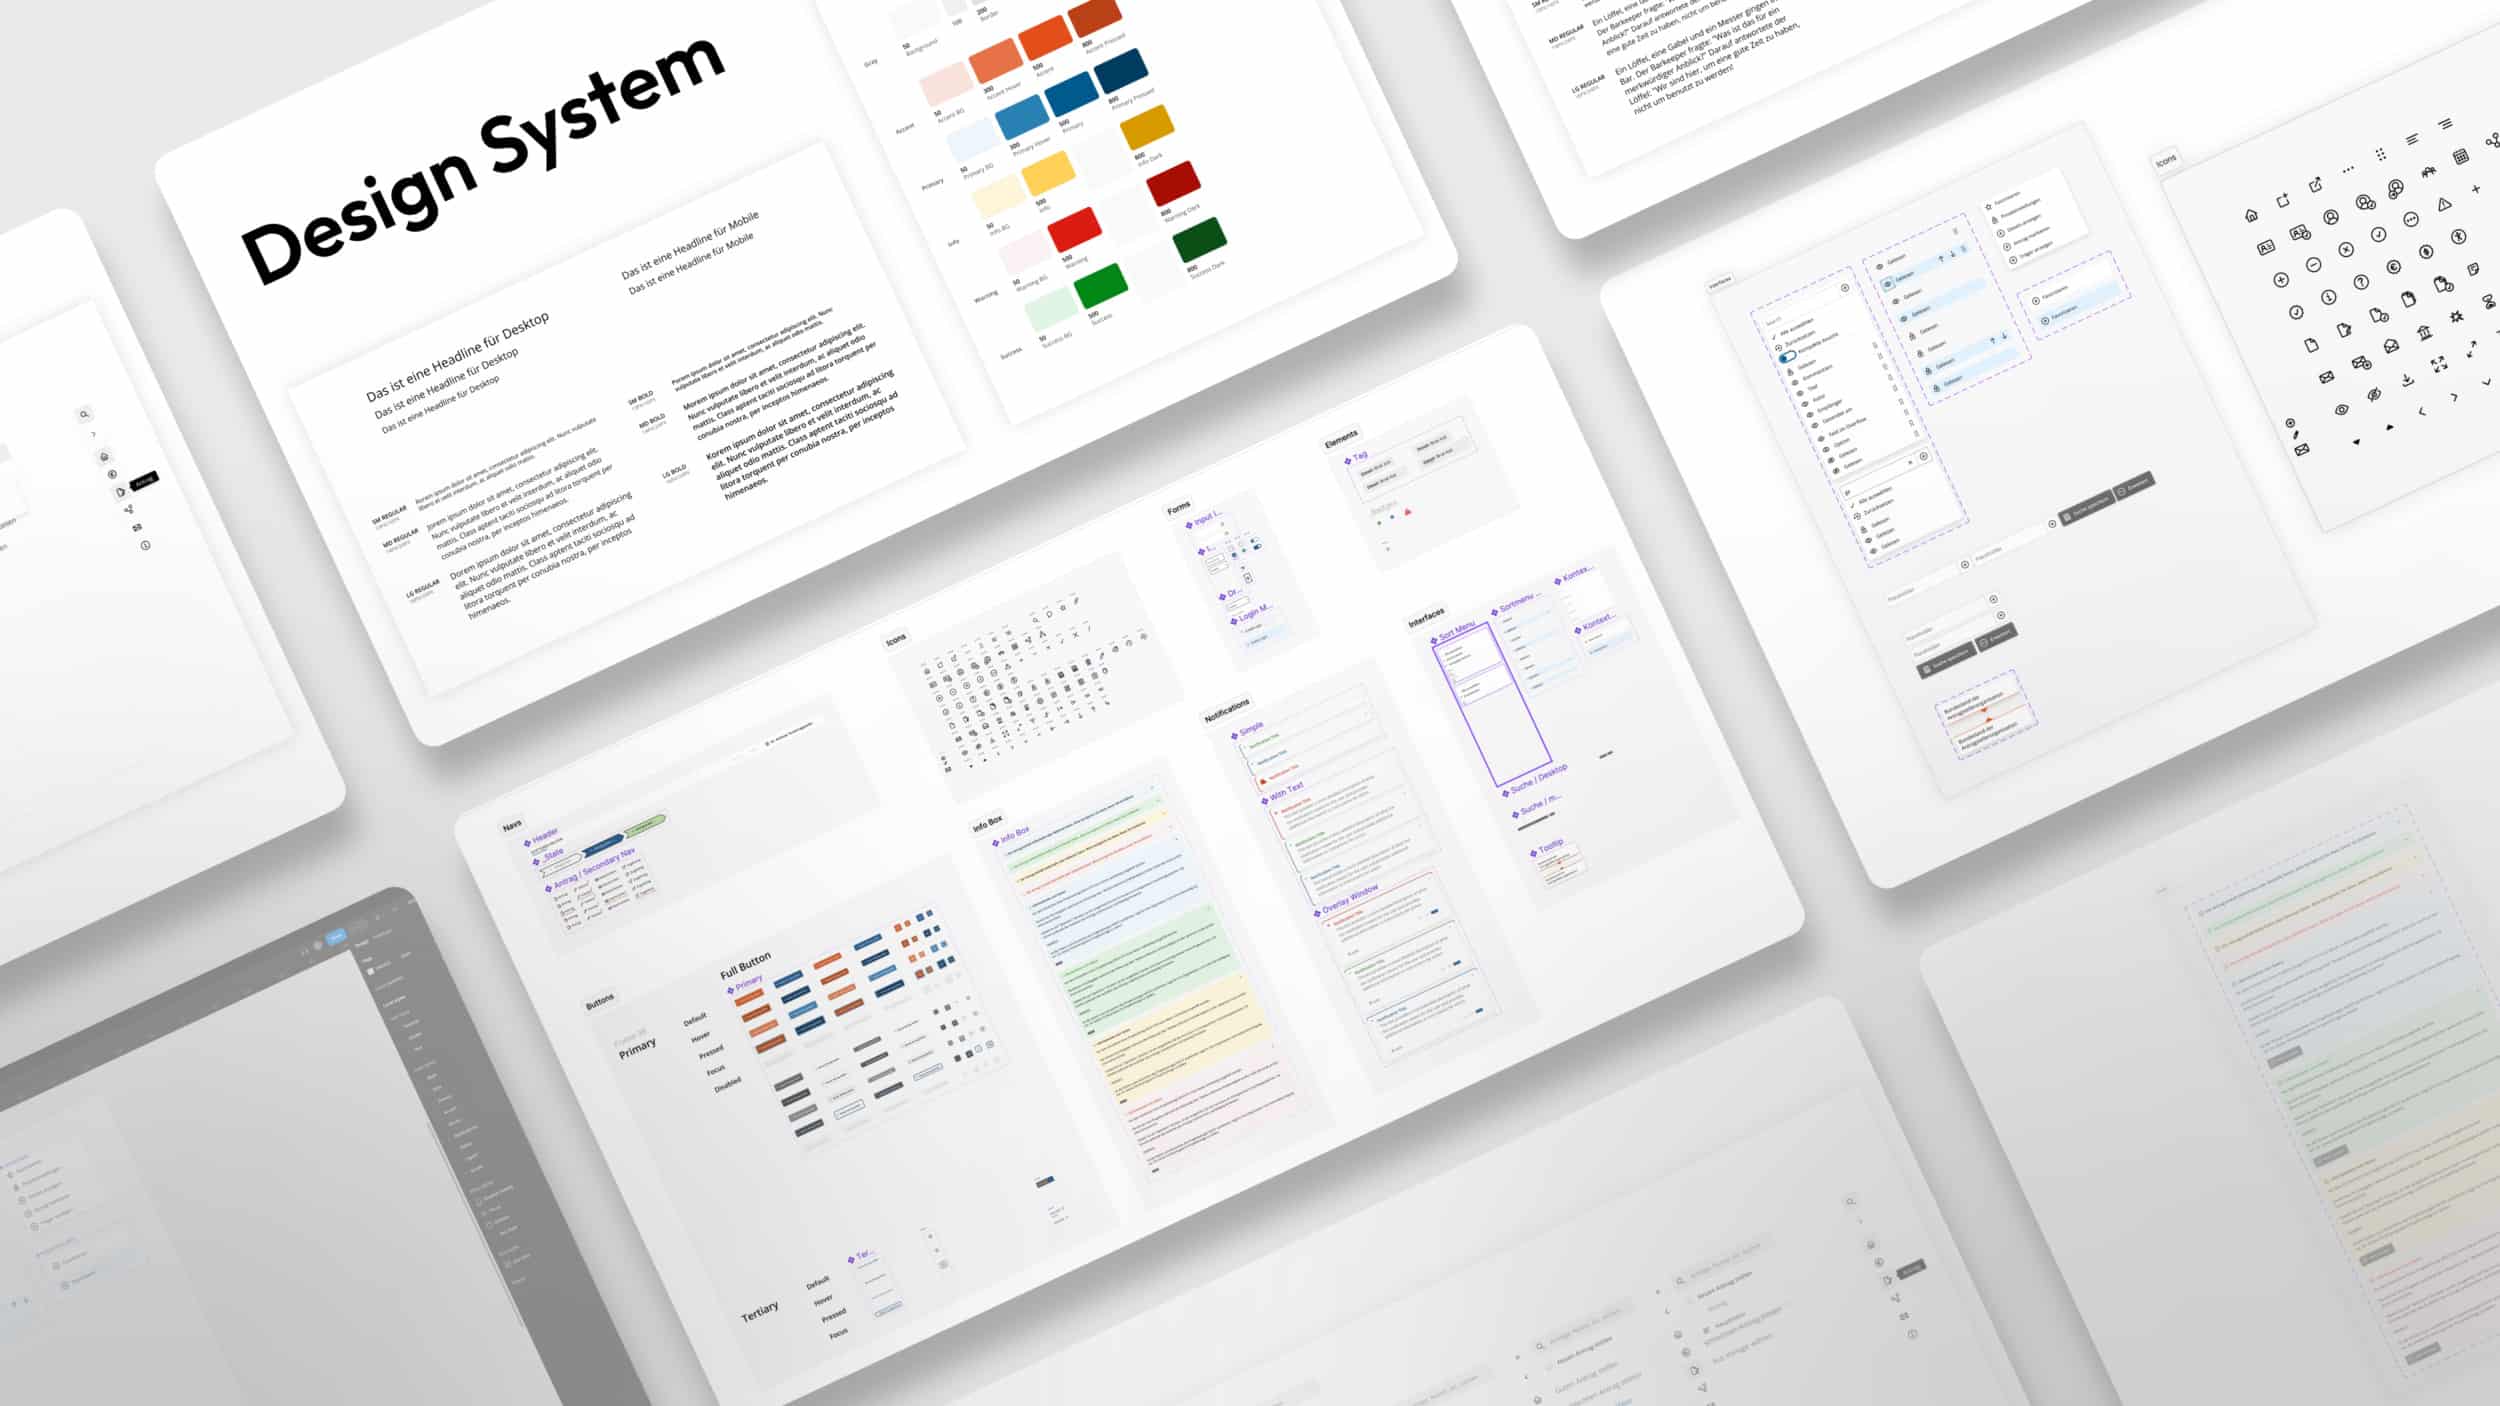 Design Systeme von der Digitalagentur Graphek aus Bremen